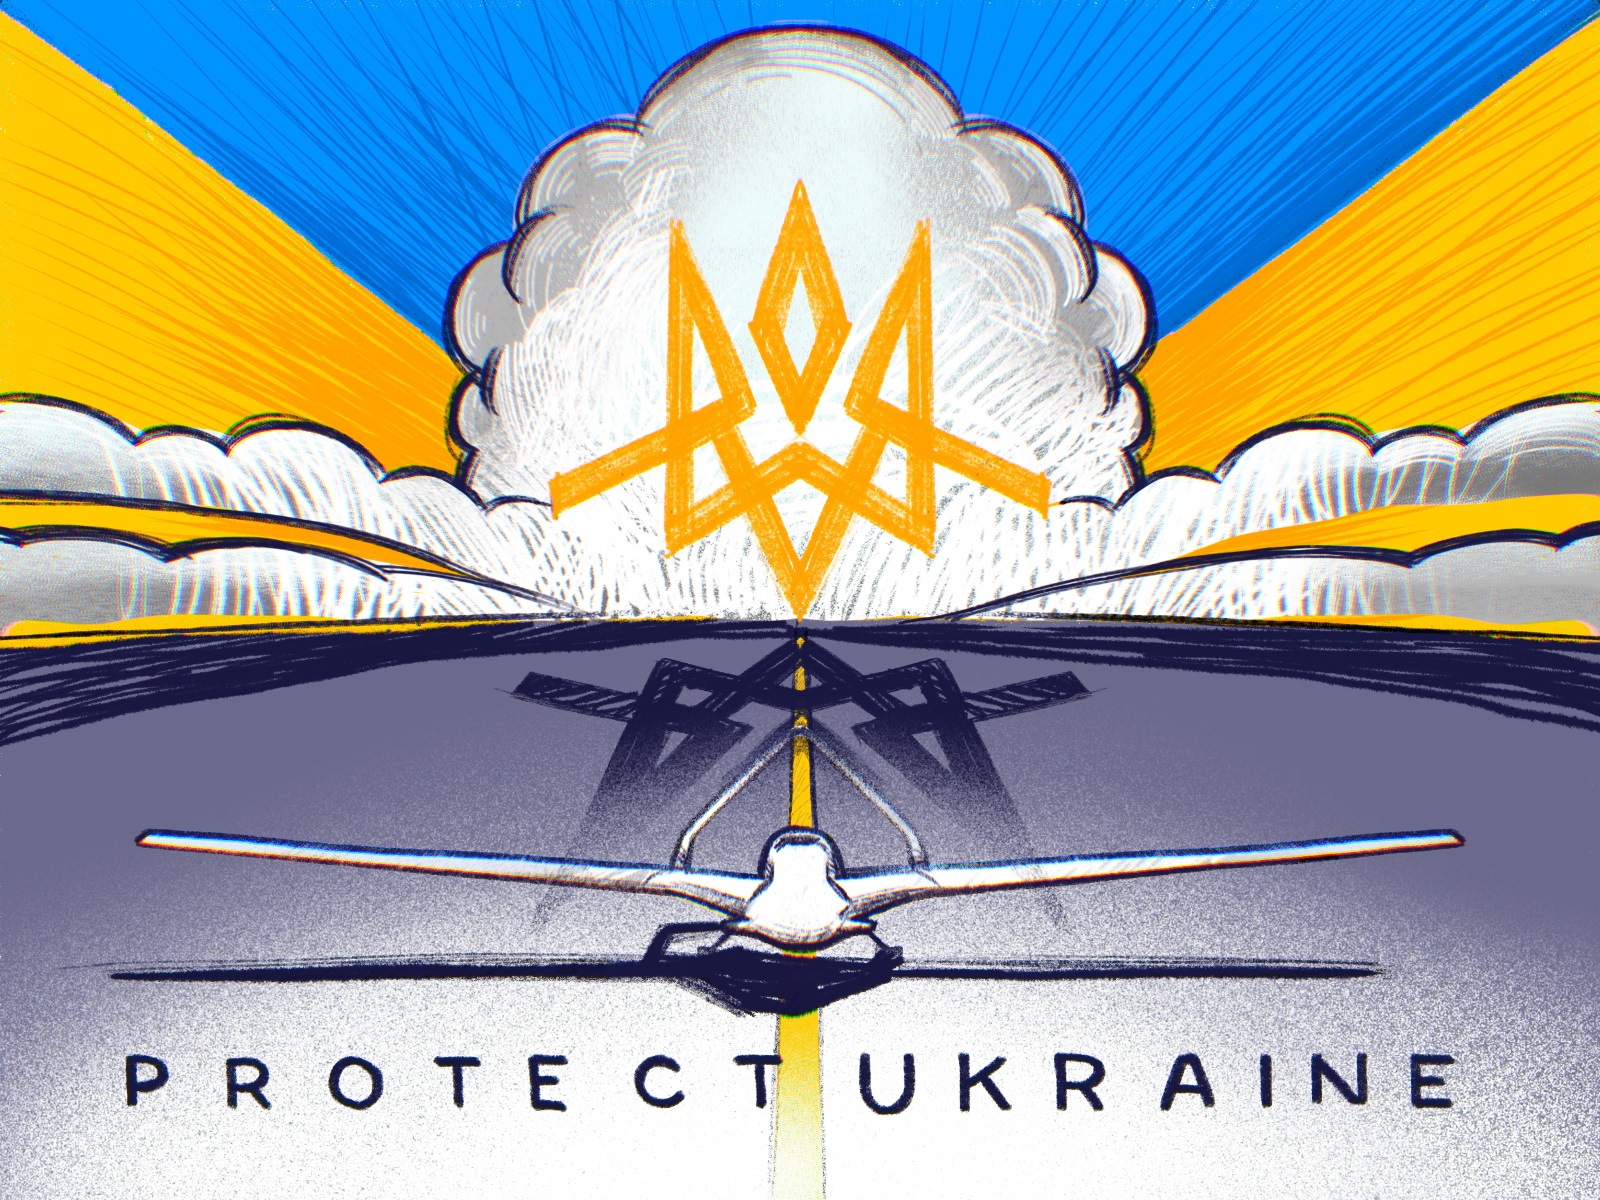 Protect Ukraine tubikarts illustration